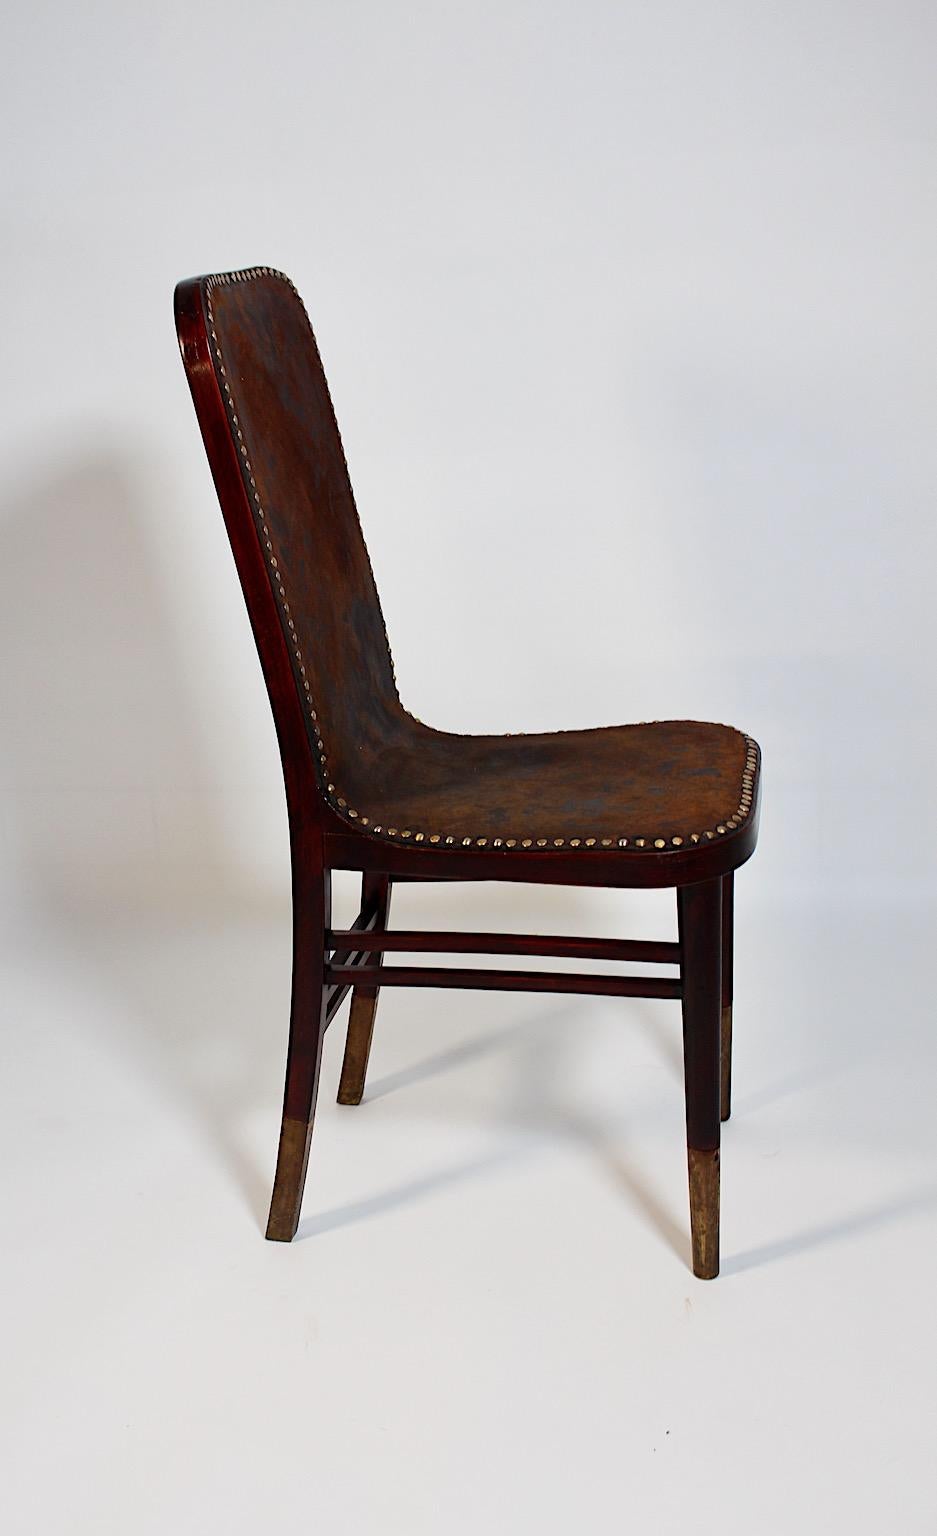 20ième siècle Chaise d'appoint Jugendstil en cuir de Beeche par Joseph Urban Gebrüder Thonet 1903 Vienna en vente